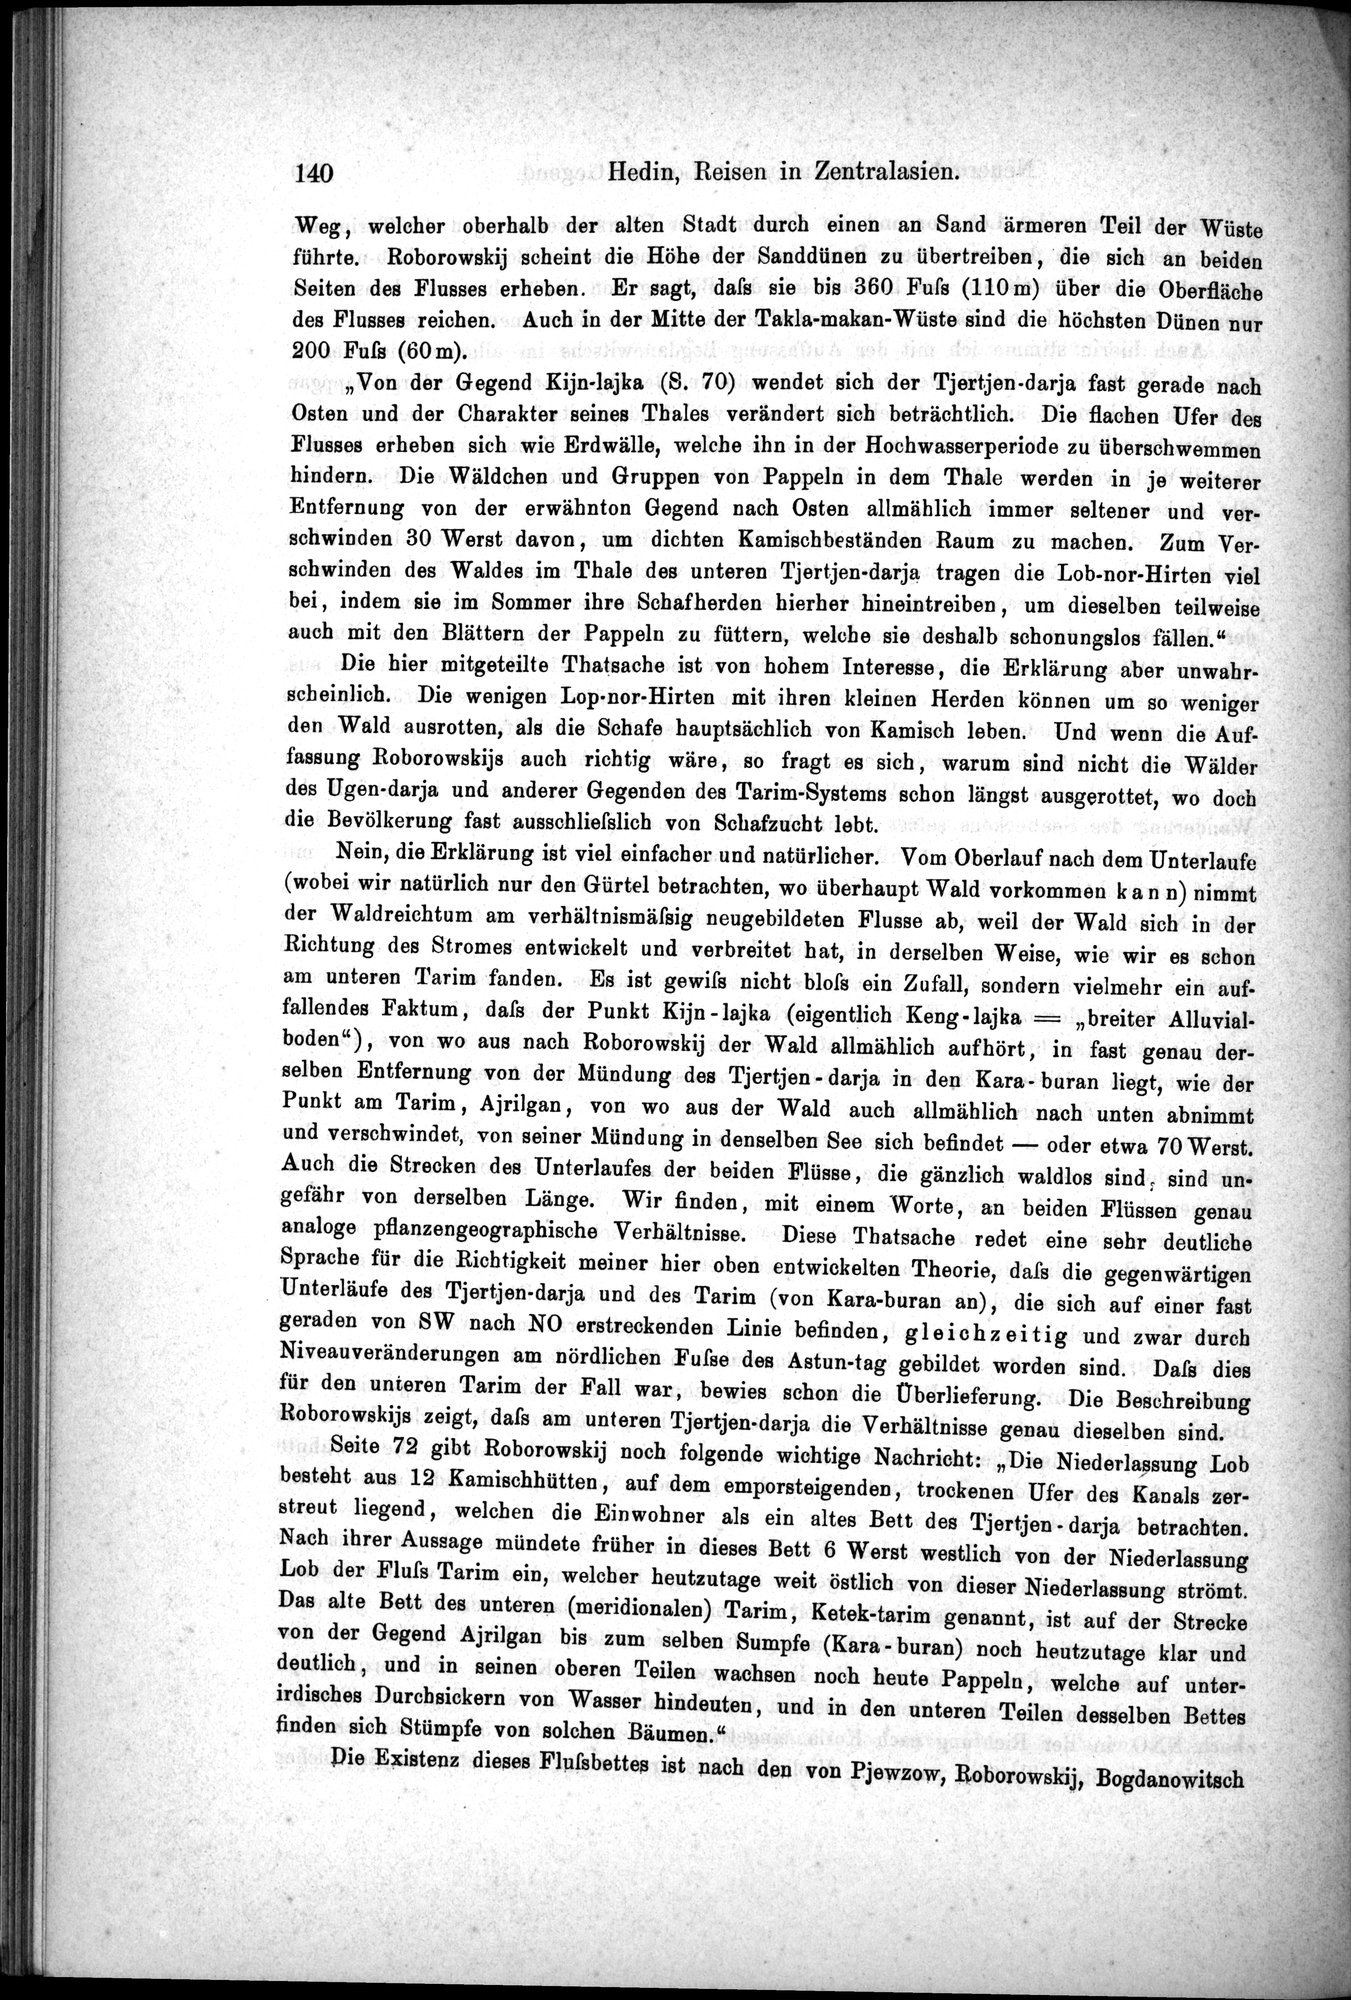 Die Geographische-Wissenschaftlichen Ergebnisse meiner Reisen in Zentralasien, 1894-1897 : vol.1 / Page 152 (Grayscale High Resolution Image)